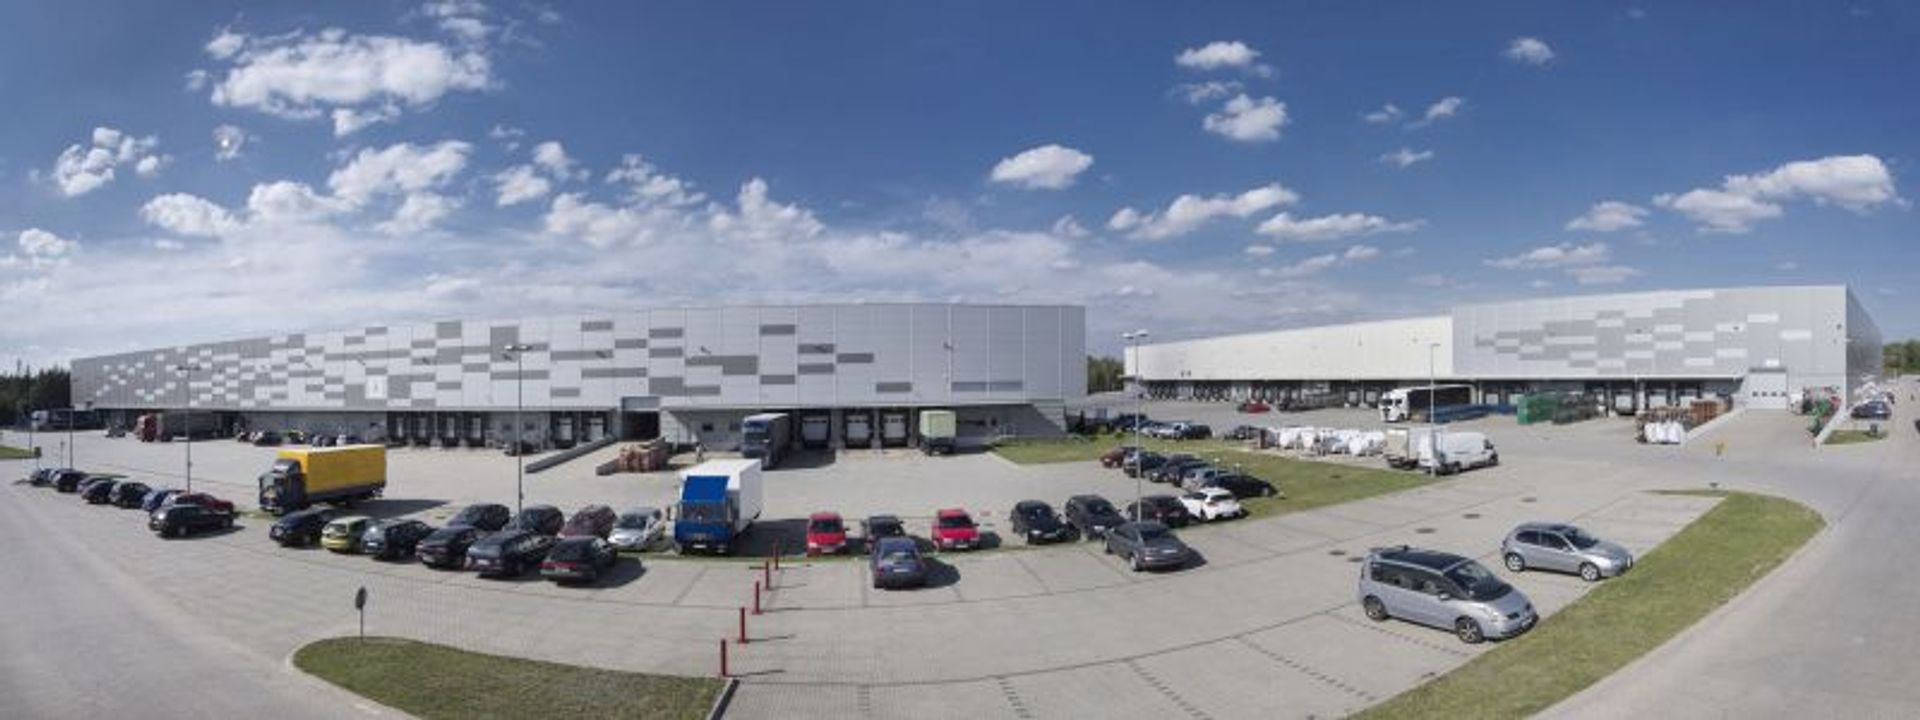  BIK S.A. w połowie 2016 roku rozpocznie rozbudowę Śląskiego Centrum Logistycznego